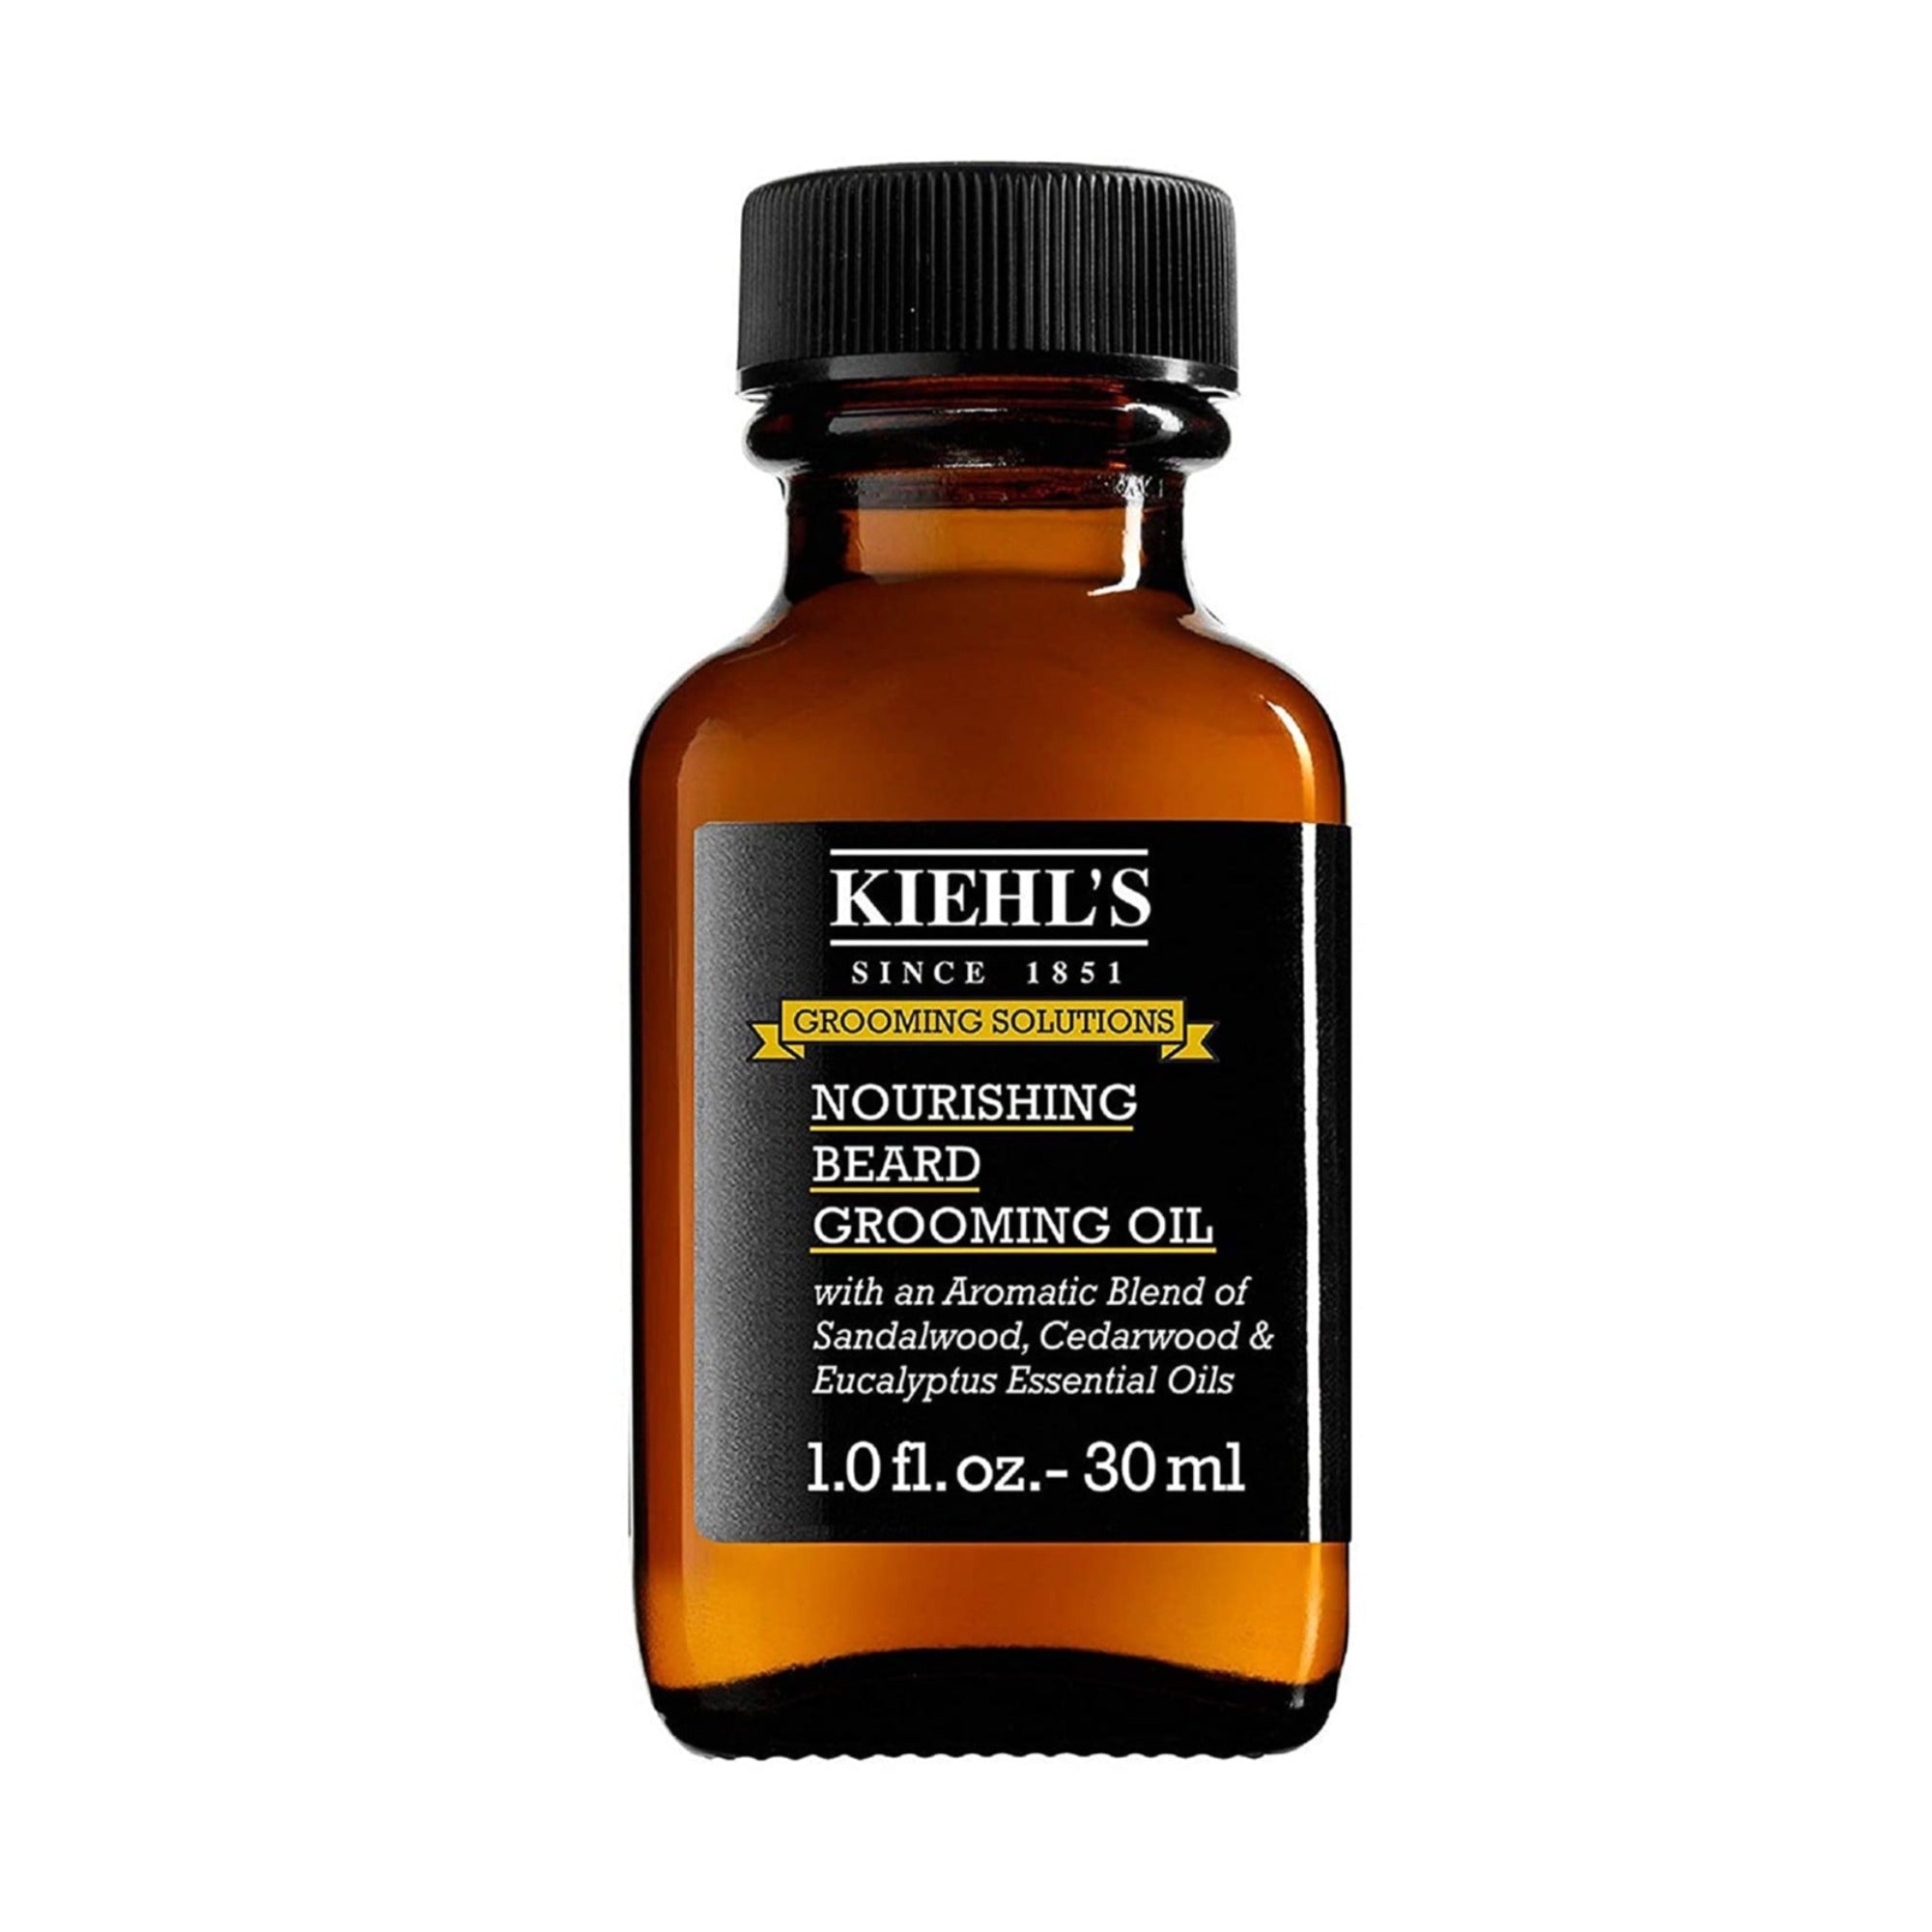 Kiehl's Nourishing Beard Grooming Oil / 1.OZ